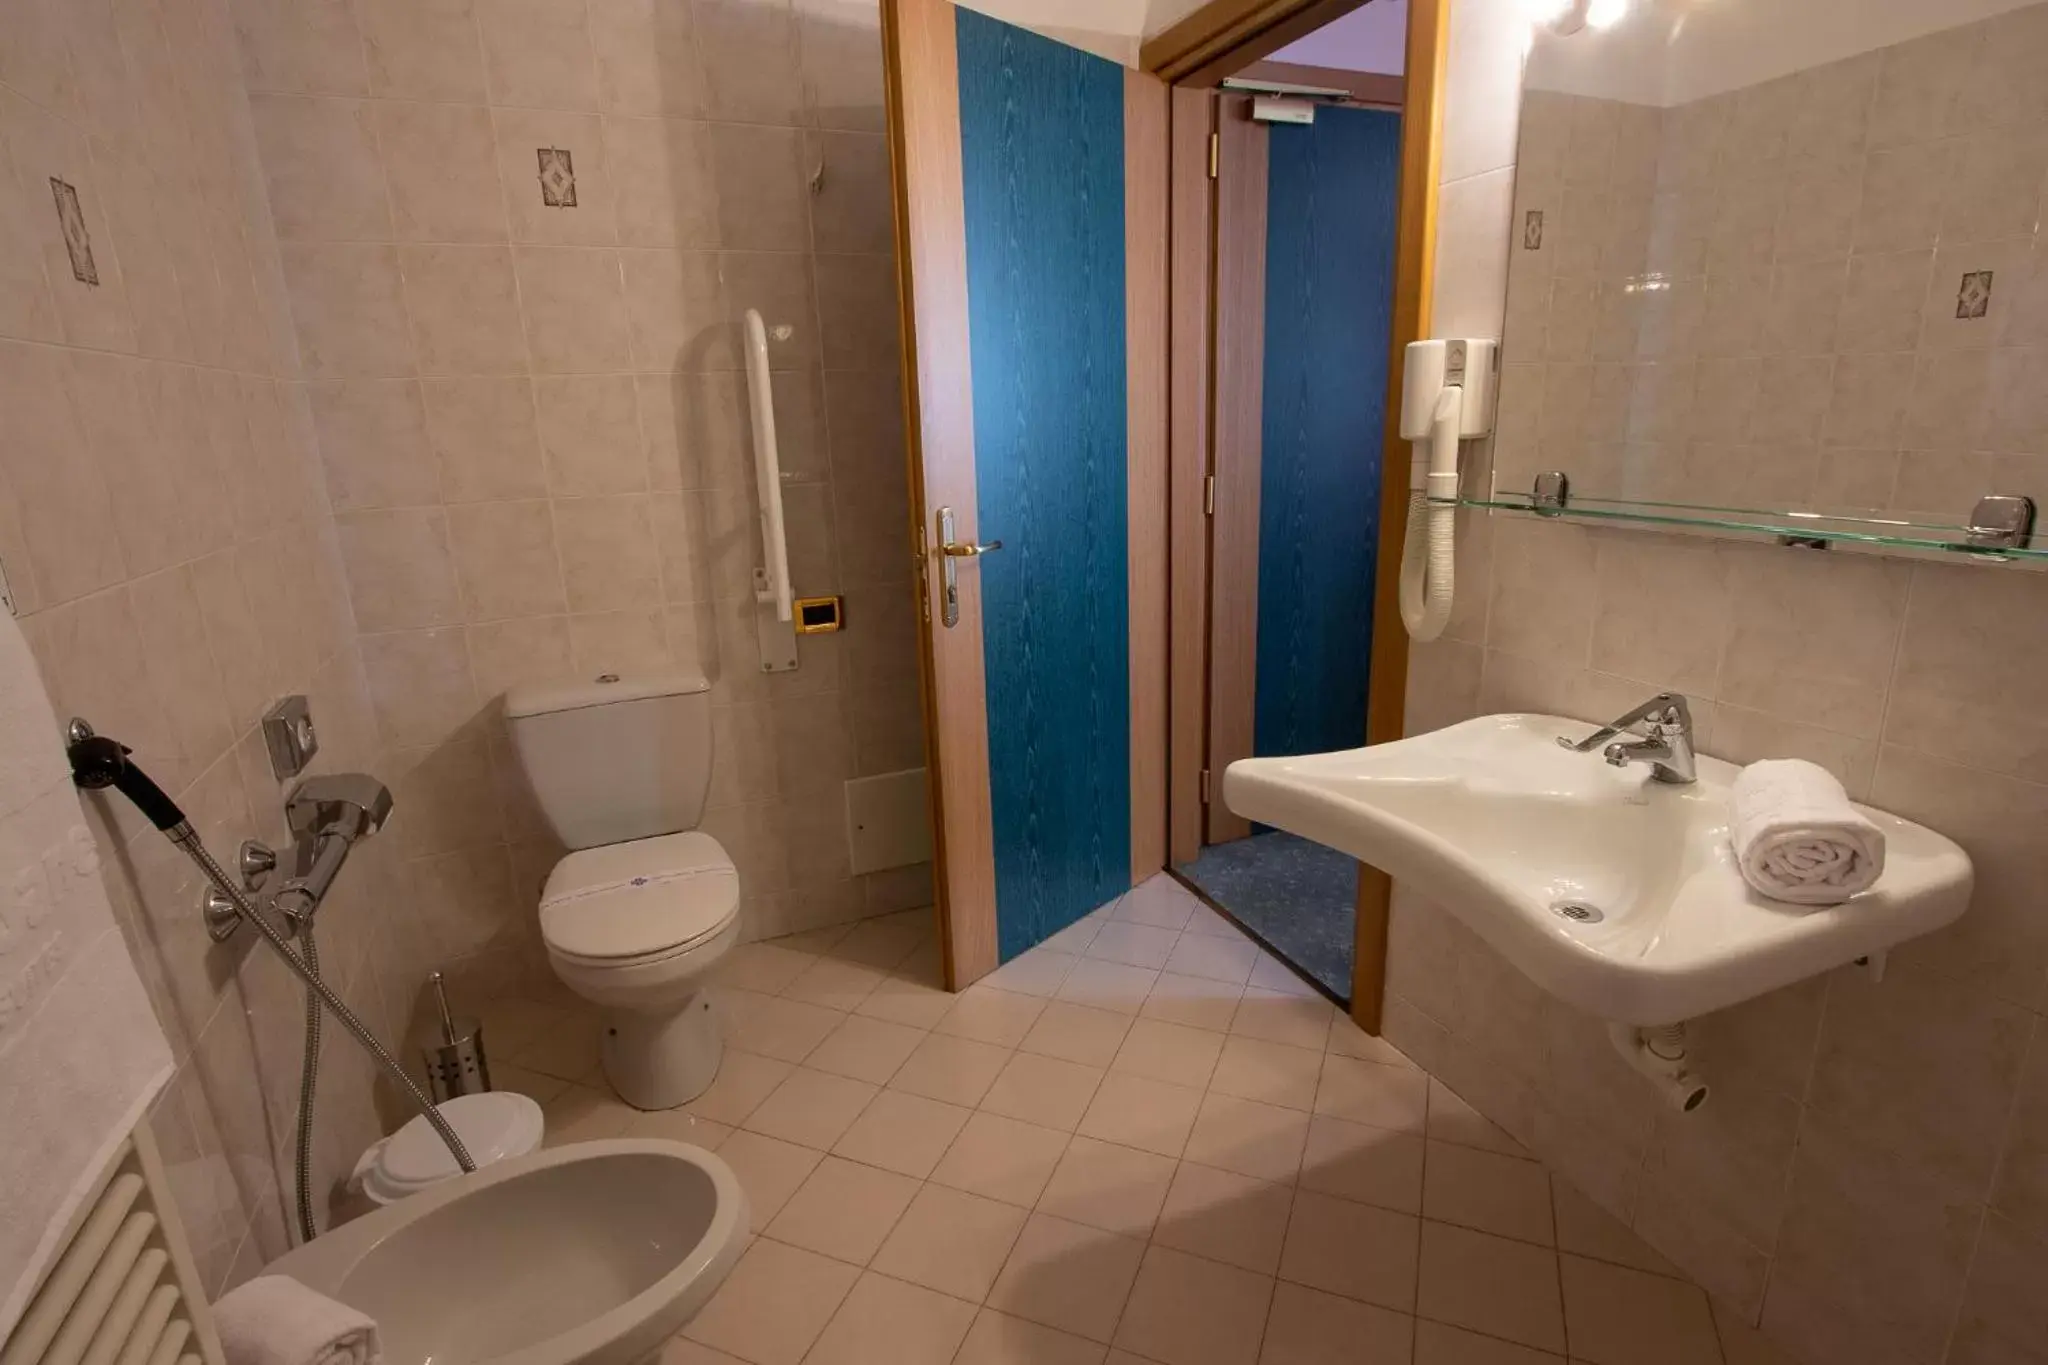 Bathroom in Hotel Santanton